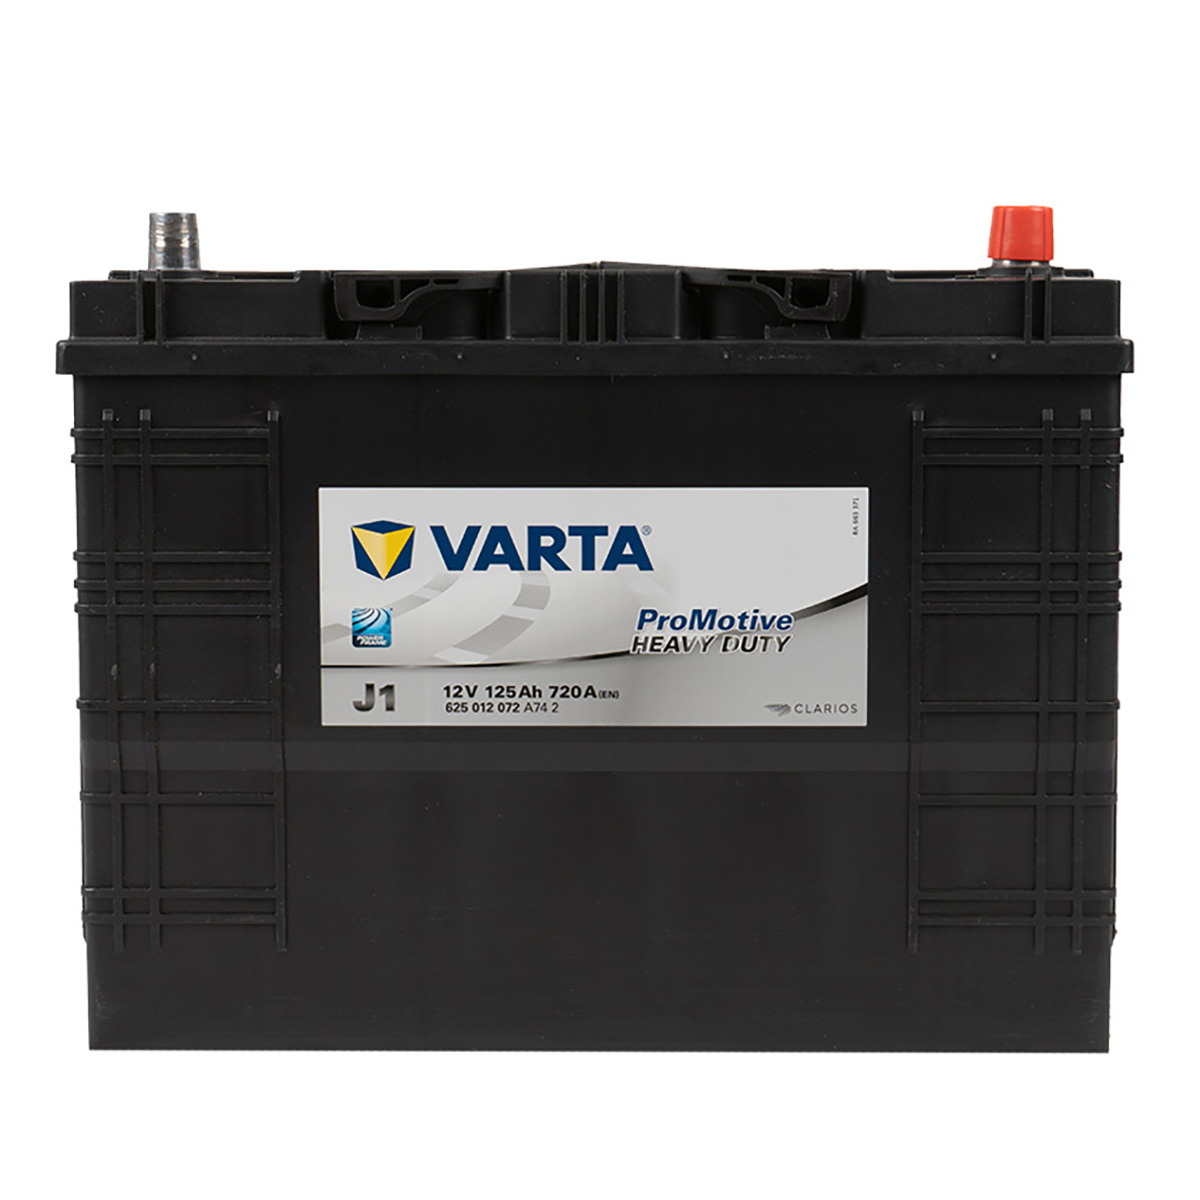 VARTA J1 ProMotive Heavy Duty 125Ah 720A LKW Batterie 625 012 072